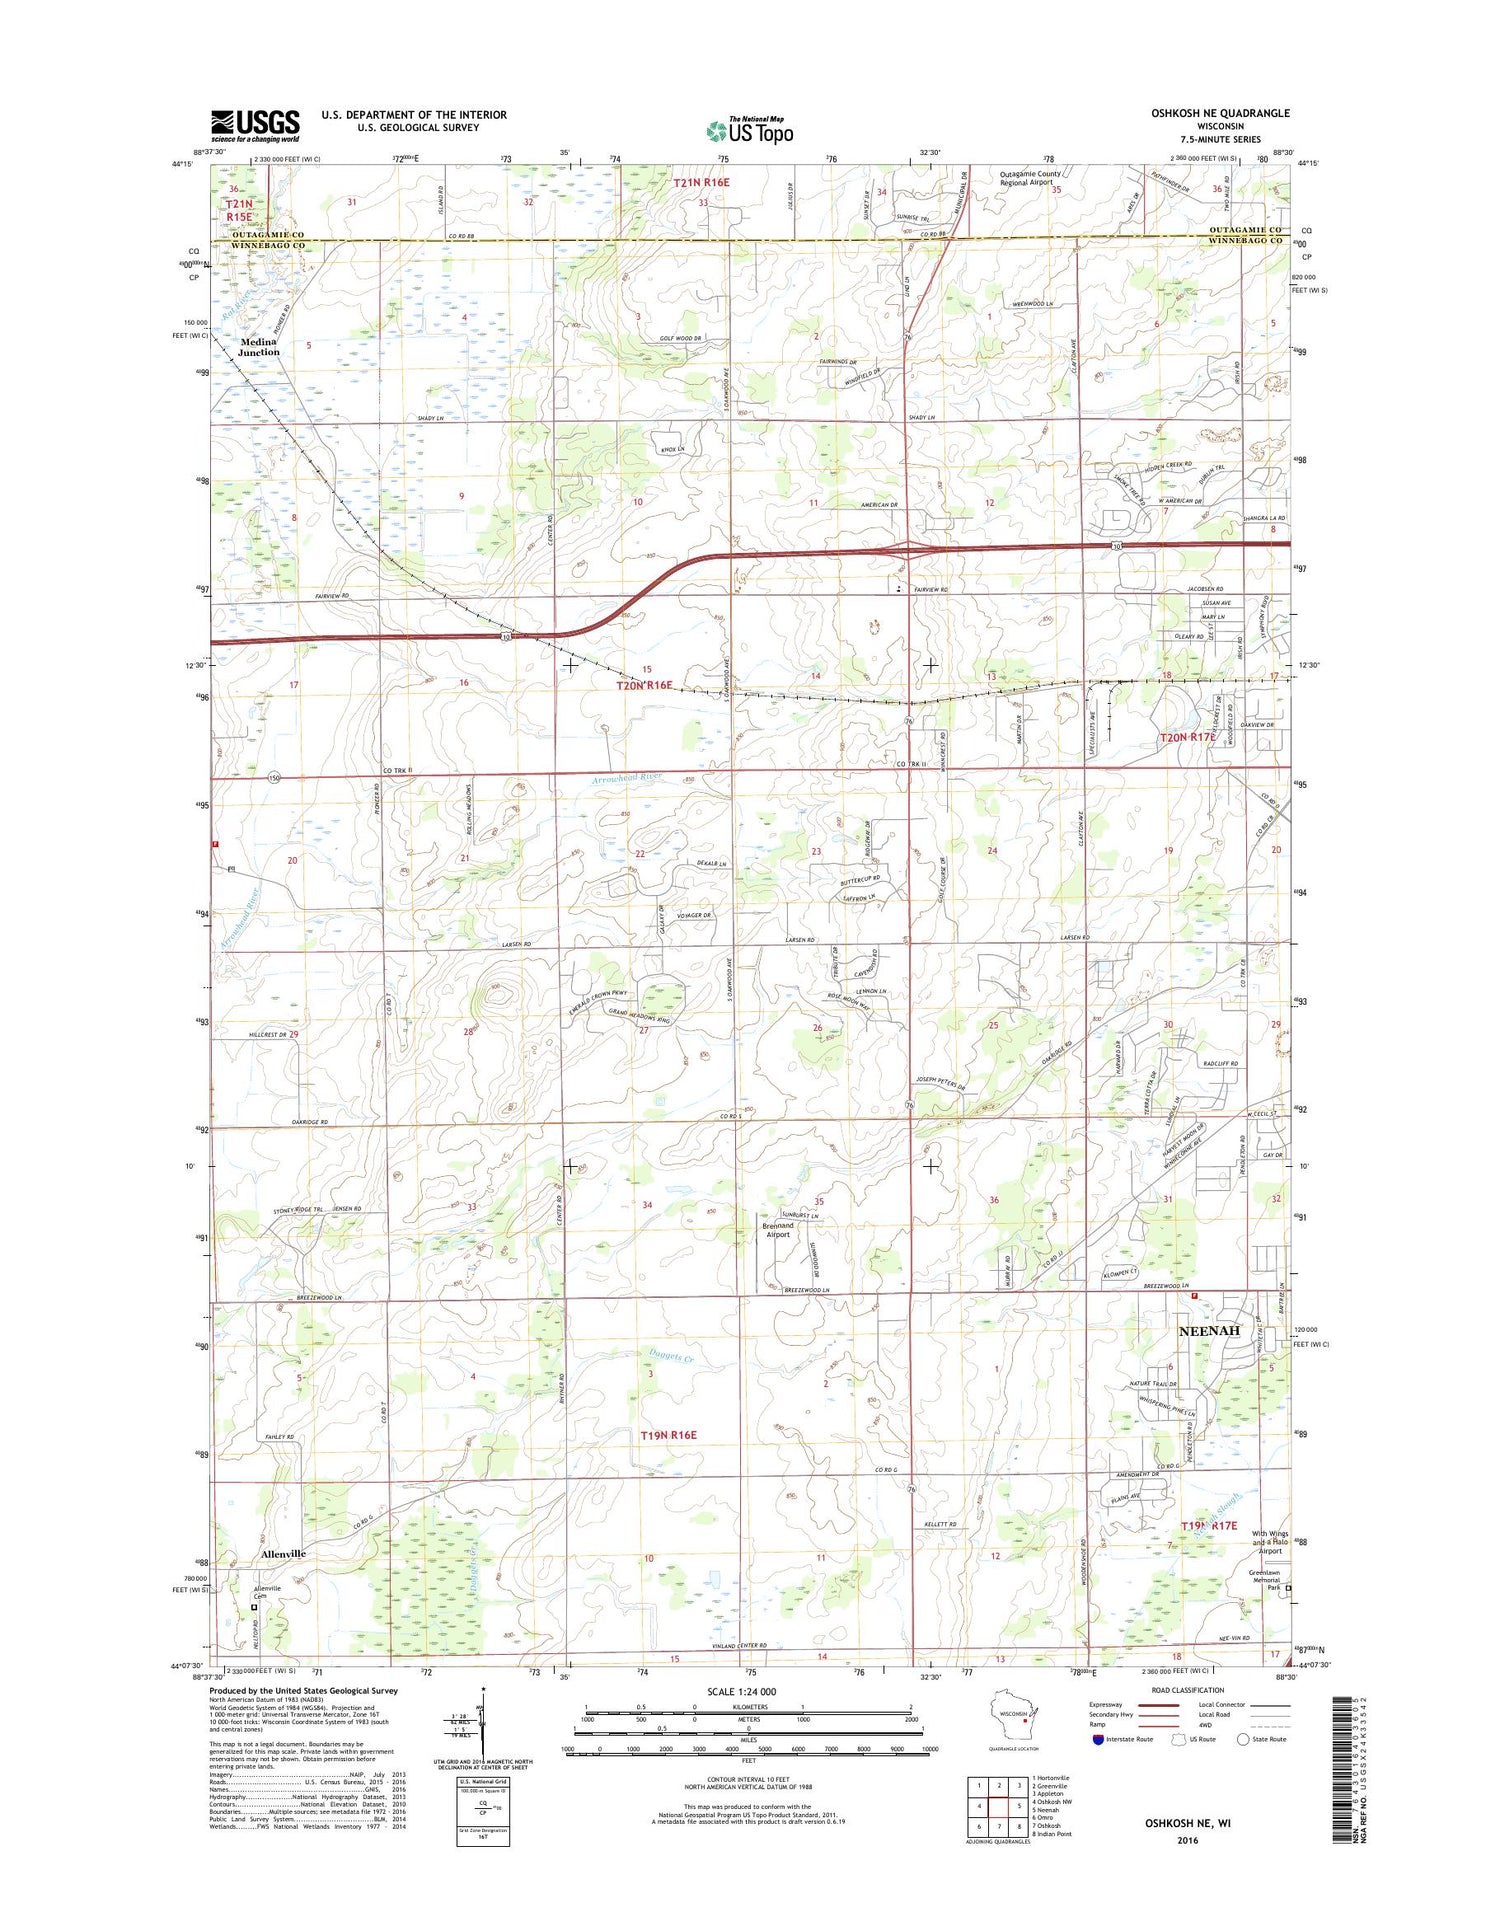 Oshkosh NE Wisconsin US Topo Map Image